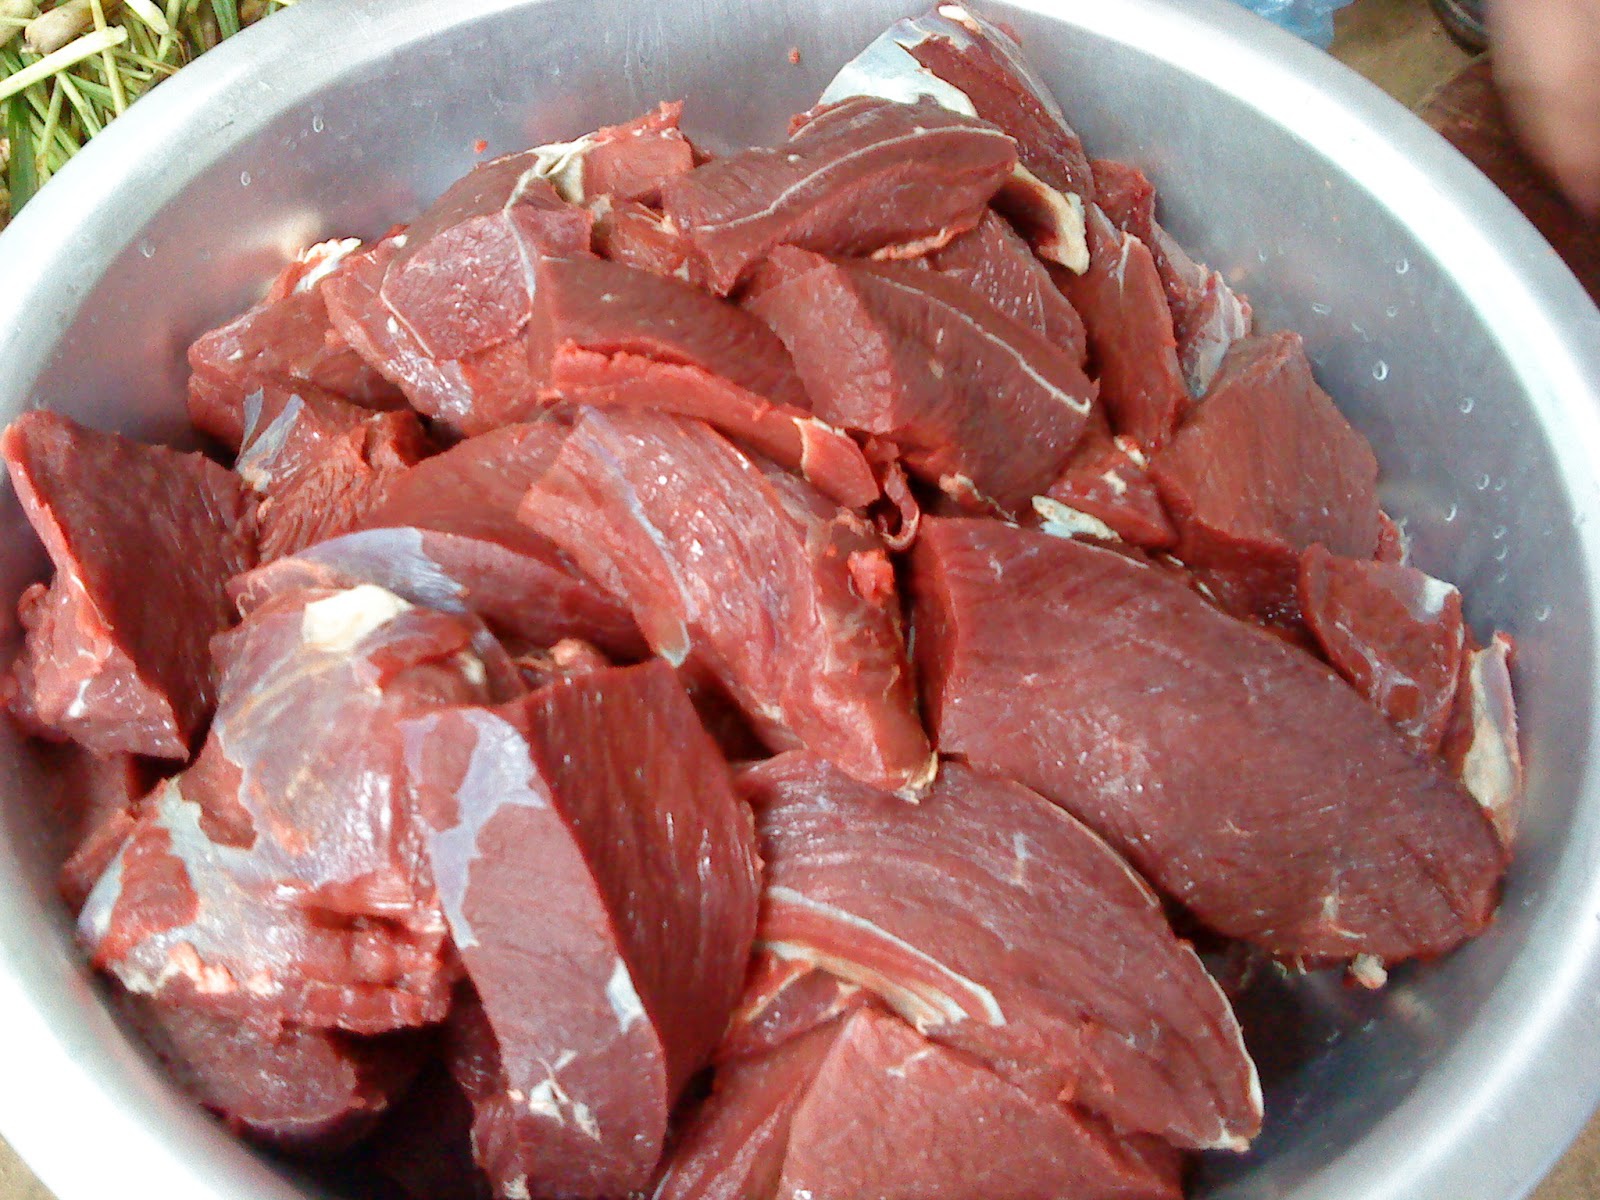 Thịt trâu: Thịt trâu là một phần không thể thiếu trong ẩm thực Việt Nam. Nếu bạn chưa từng thử, hãy cùng khám phá hương vị đậm đà và chất lượng của thịt trâu thông qua những hình ảnh đầy sống động.